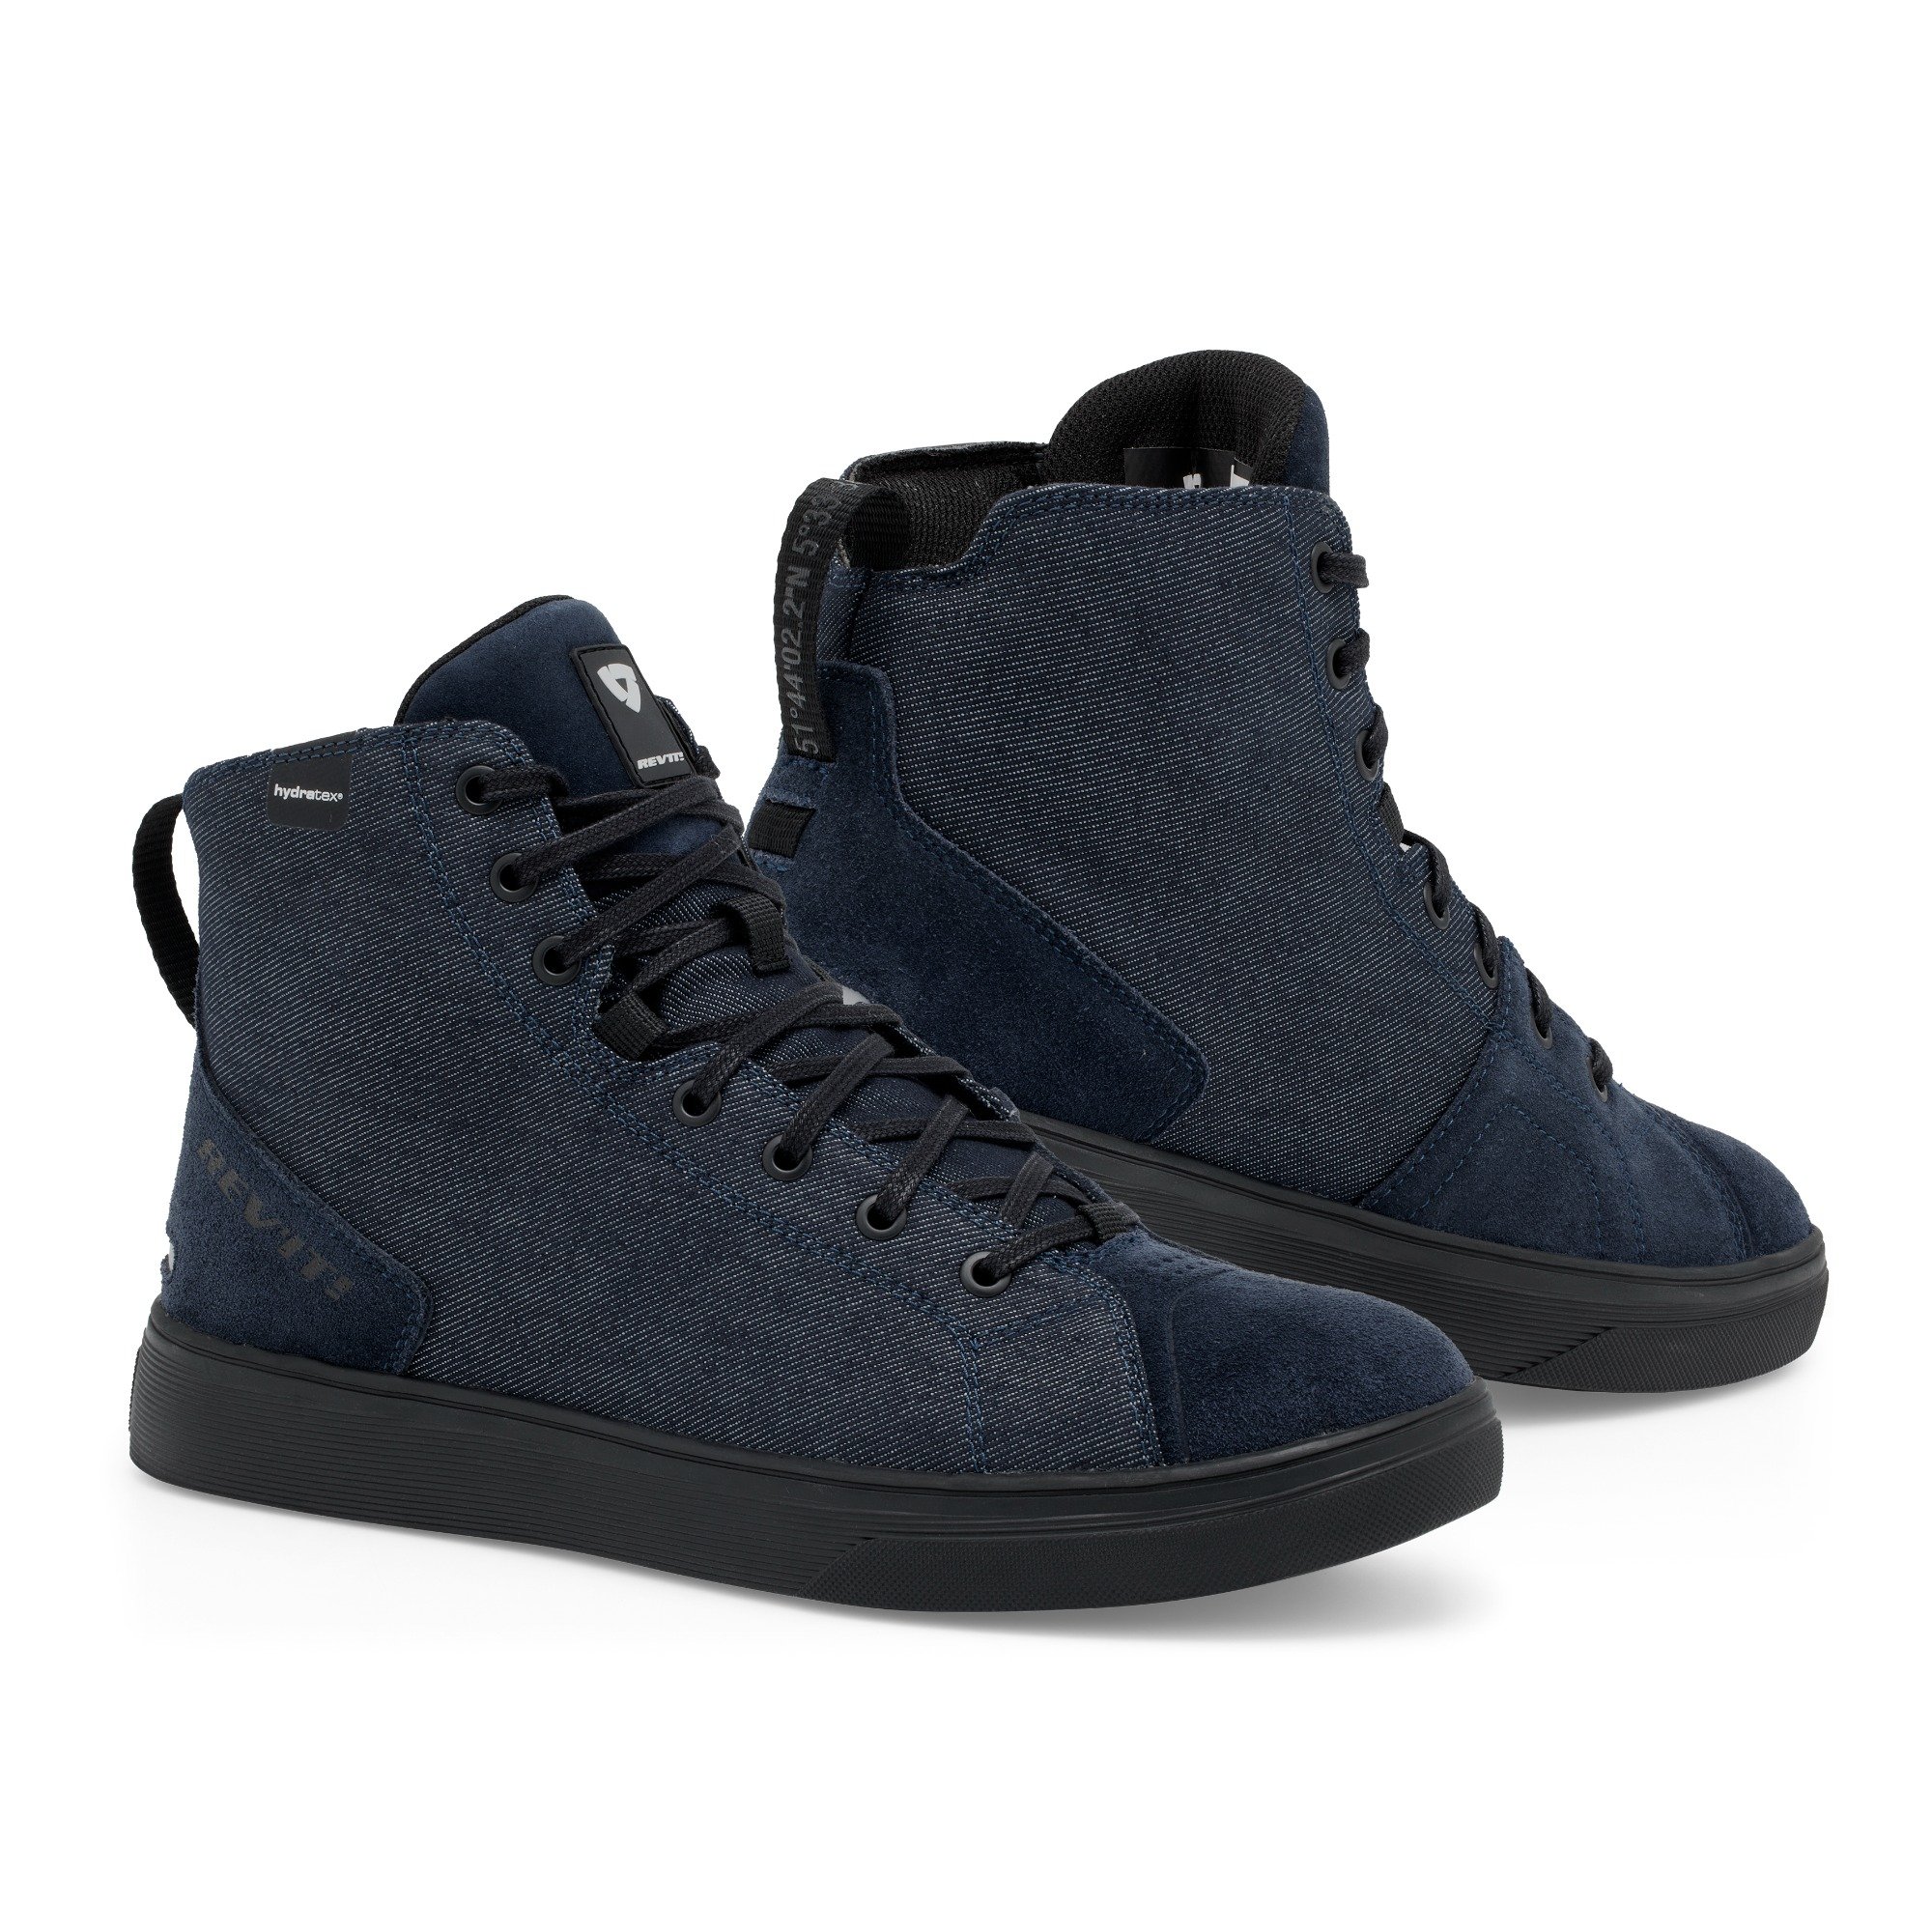 Image of REV'IT! Delta H2O Shoes Dark Blue Black Size 42 EN